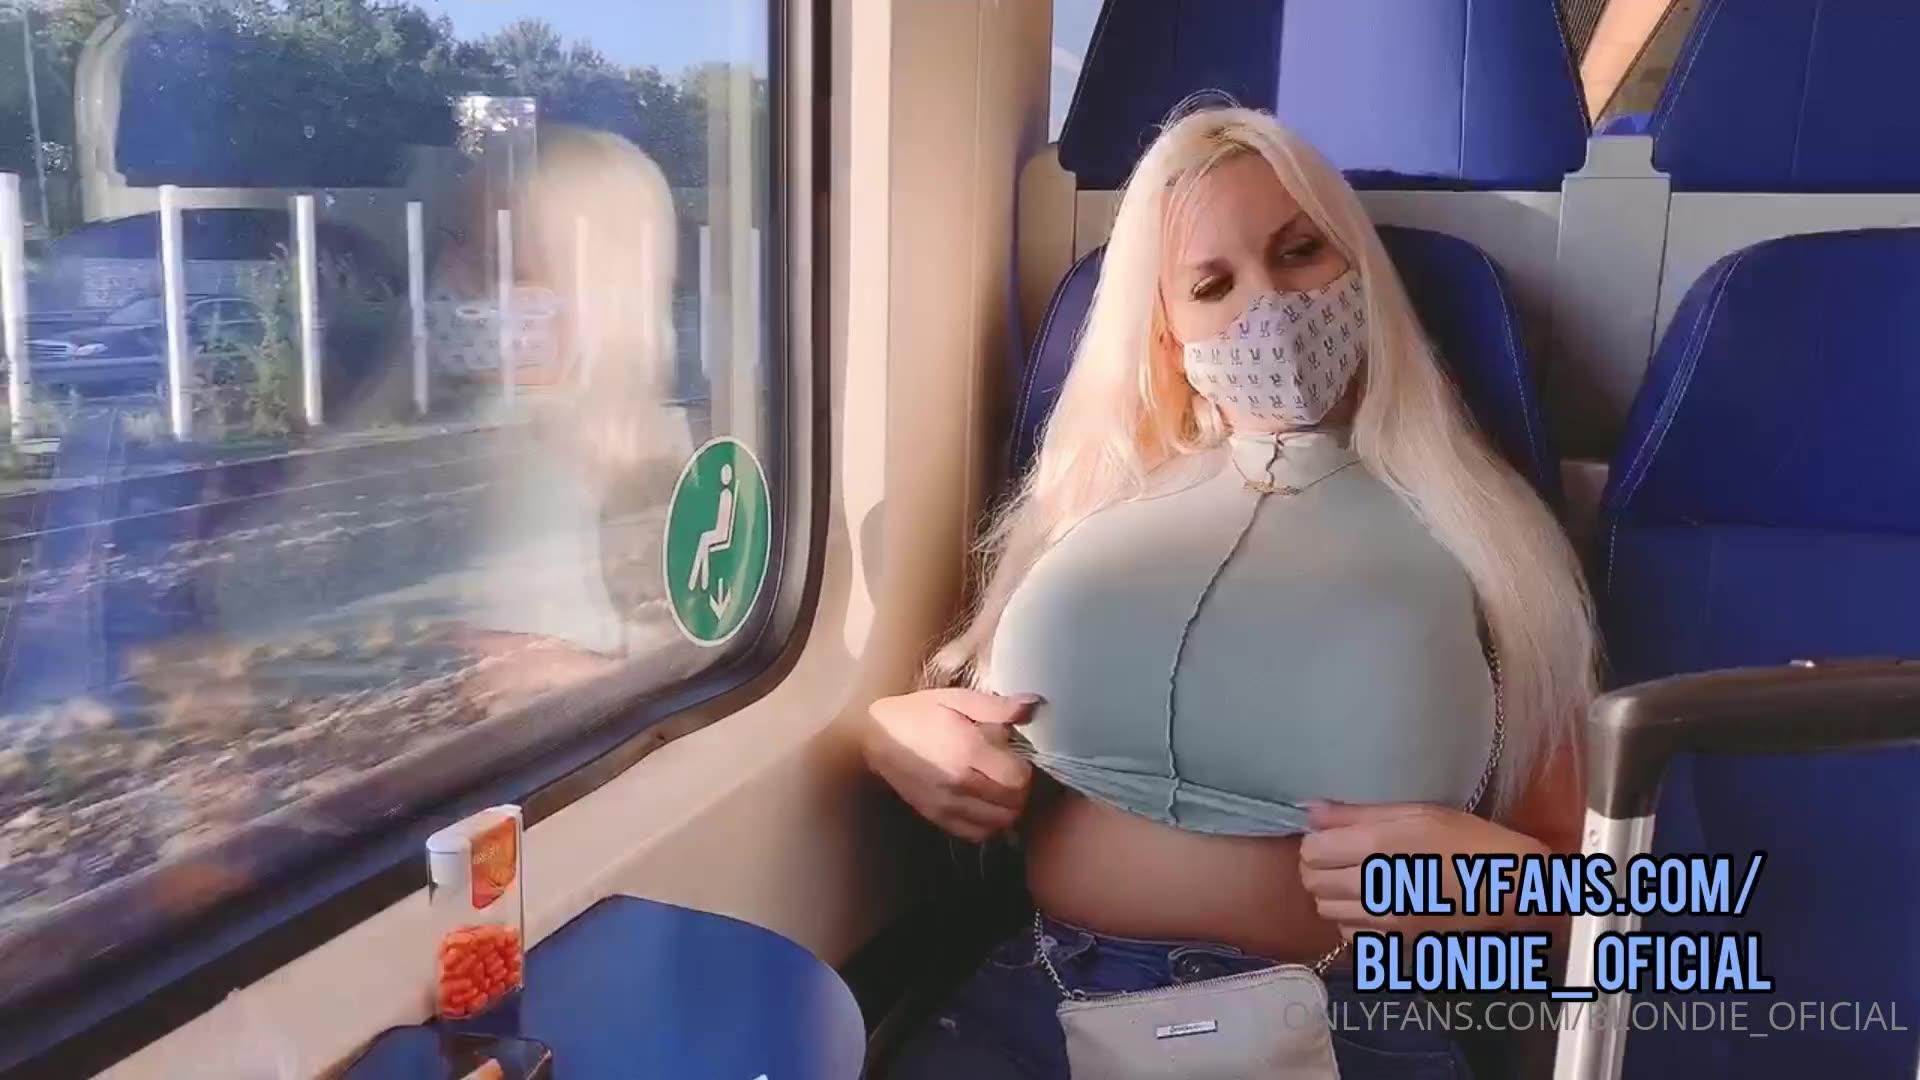 Blondie onlyfans